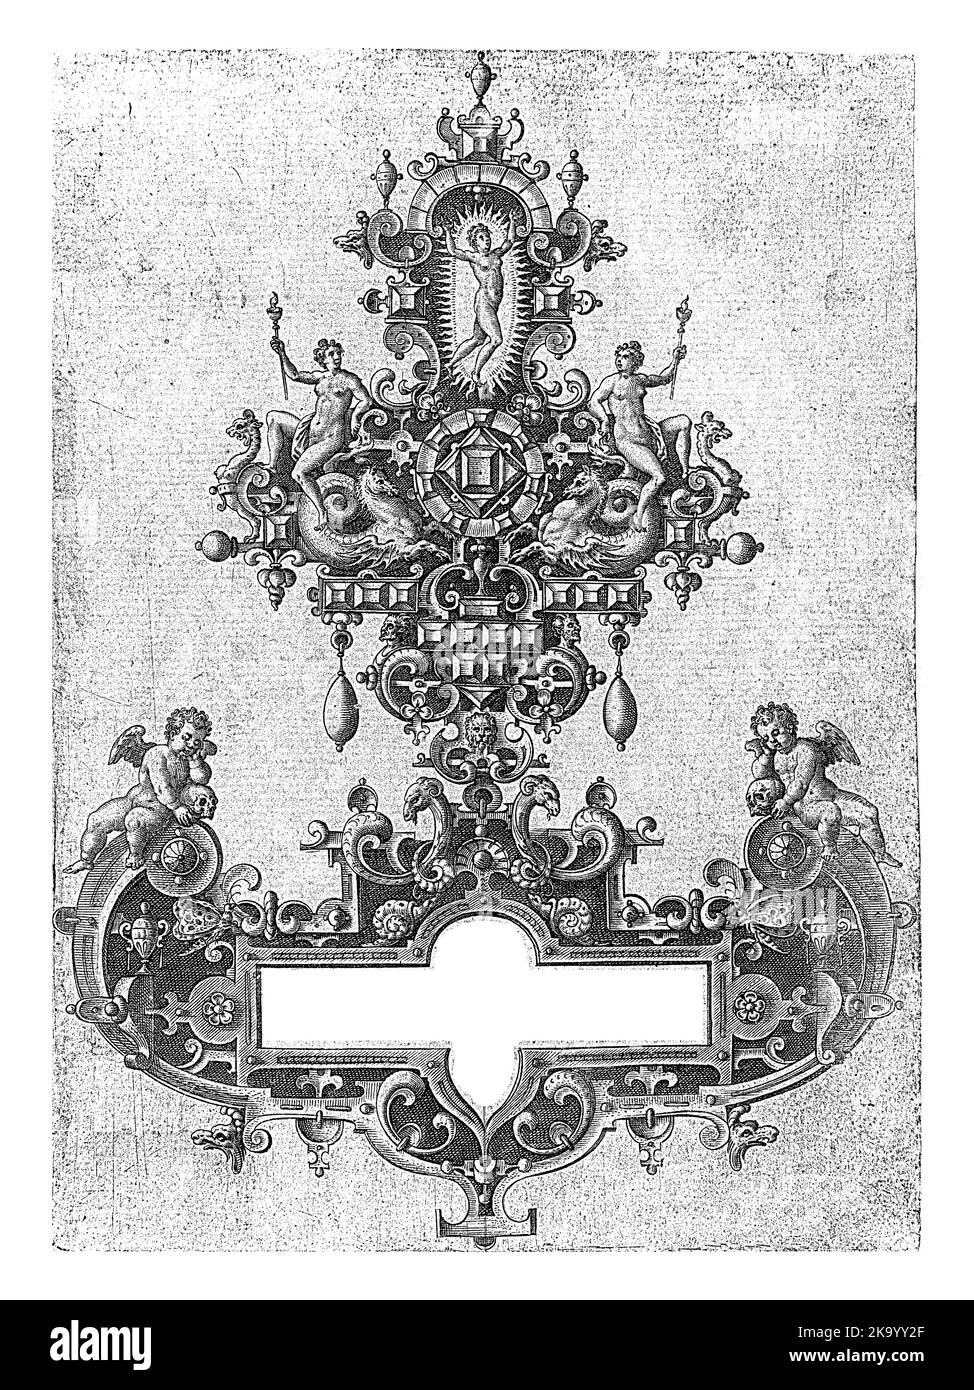 Kartusche mit Inschrift in einem Rahmen aus Grotesken, die an einem diamantförmigen Ornament mit drei Frauen hängen. Stockfoto